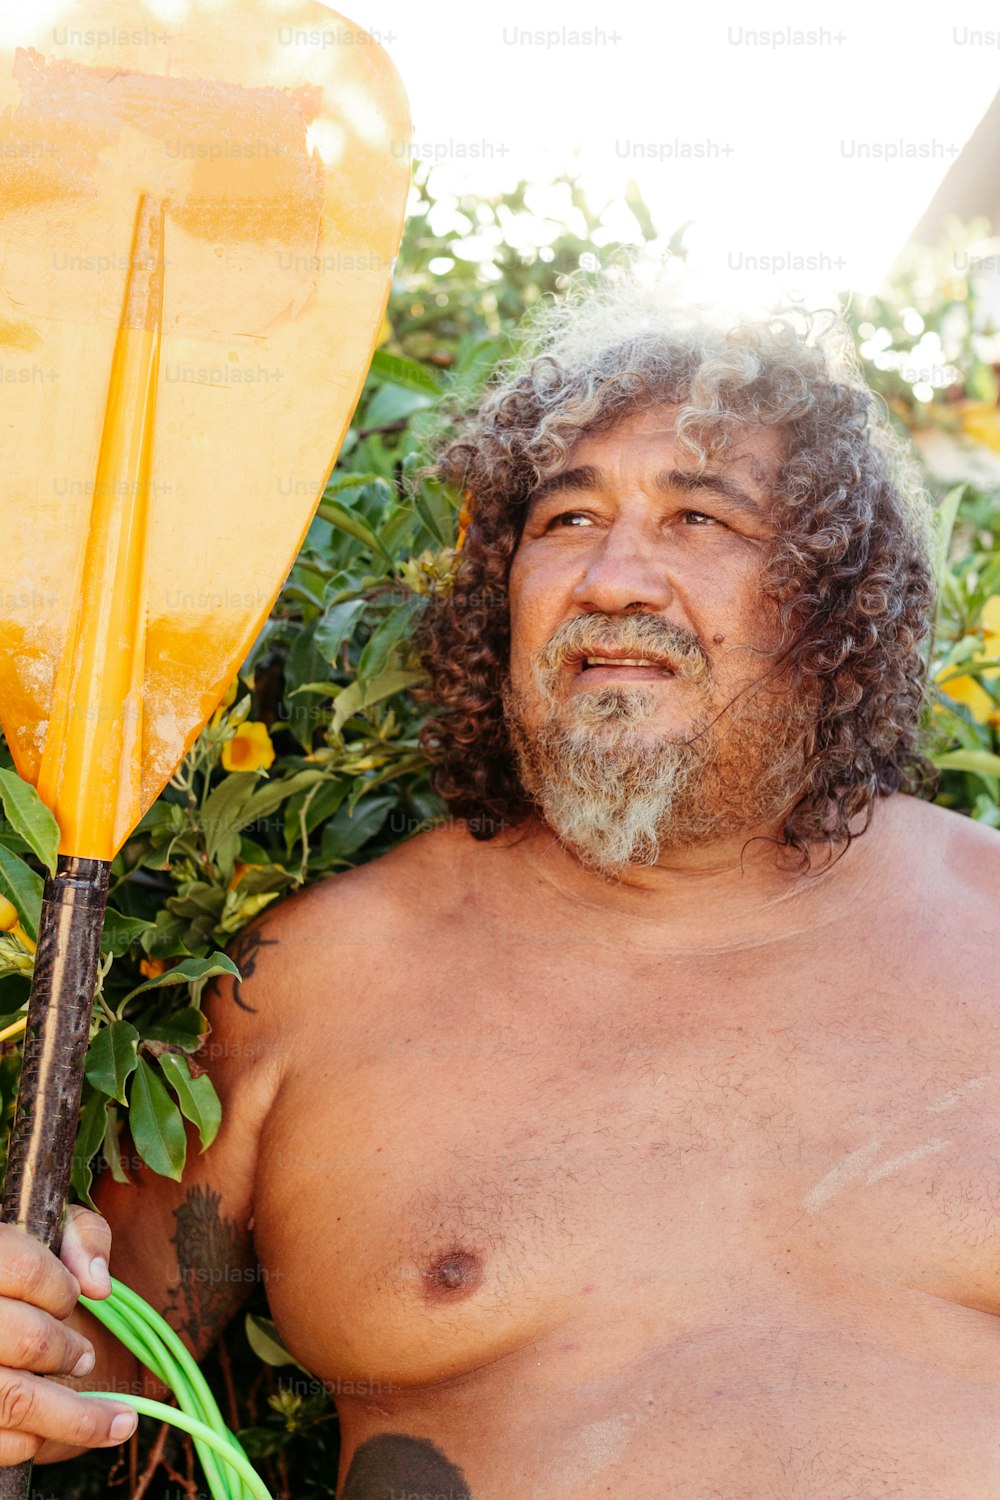 Un uomo a torso nudo che tiene una grande pagaia gialla